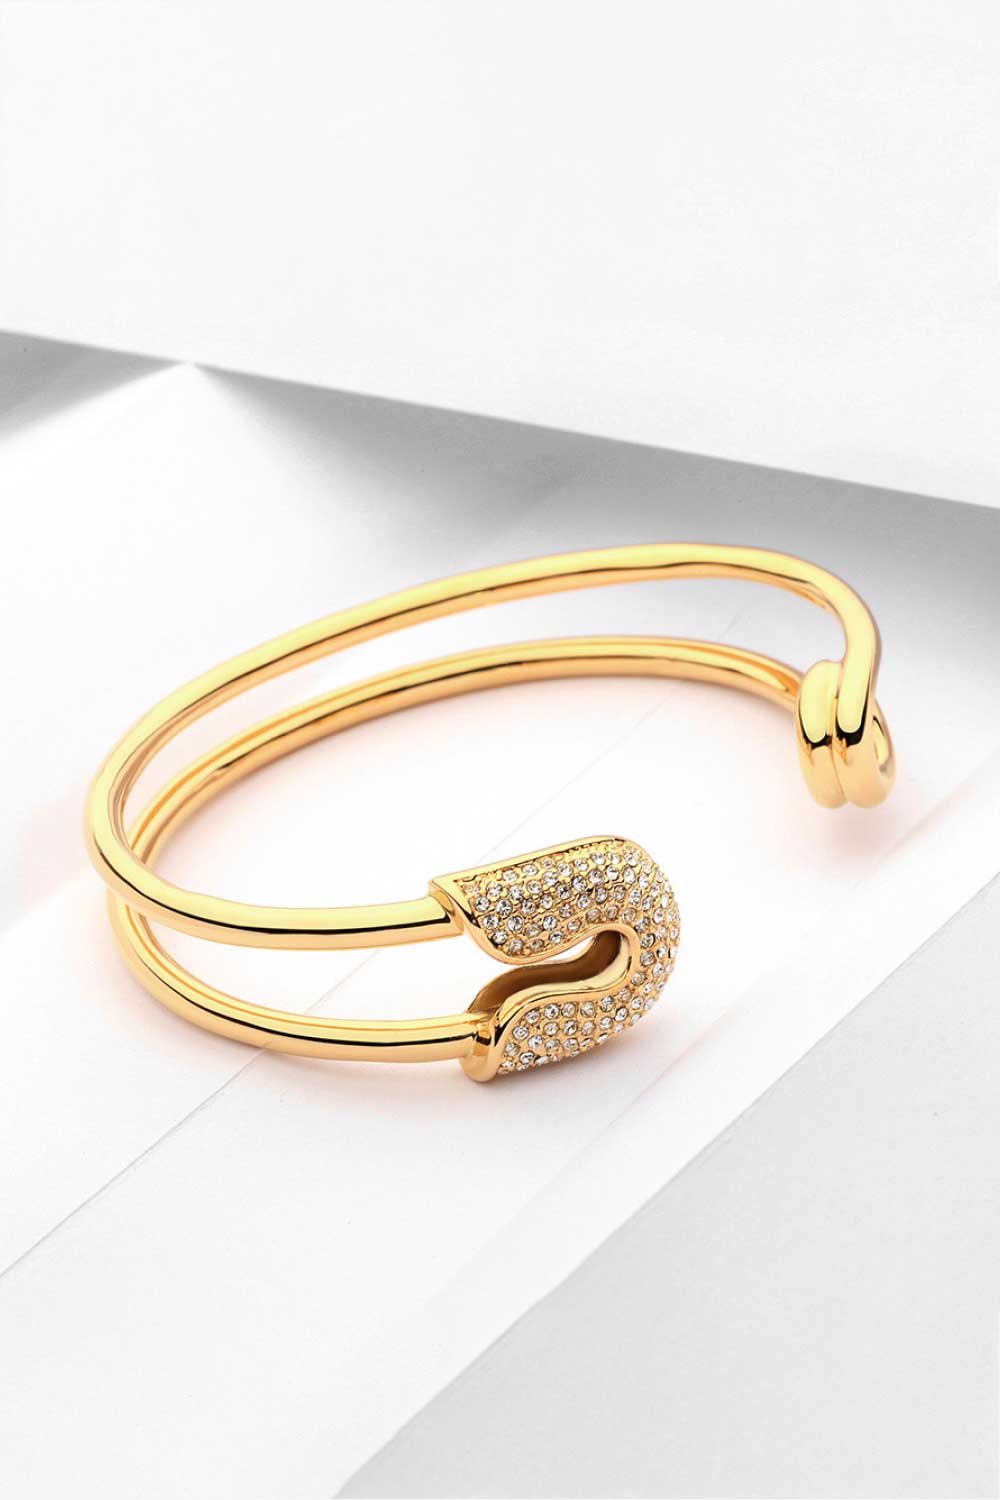 Rhinestone Double Hoop Bracelet - Women’s Jewelry - Bracelets - 2 - 2024